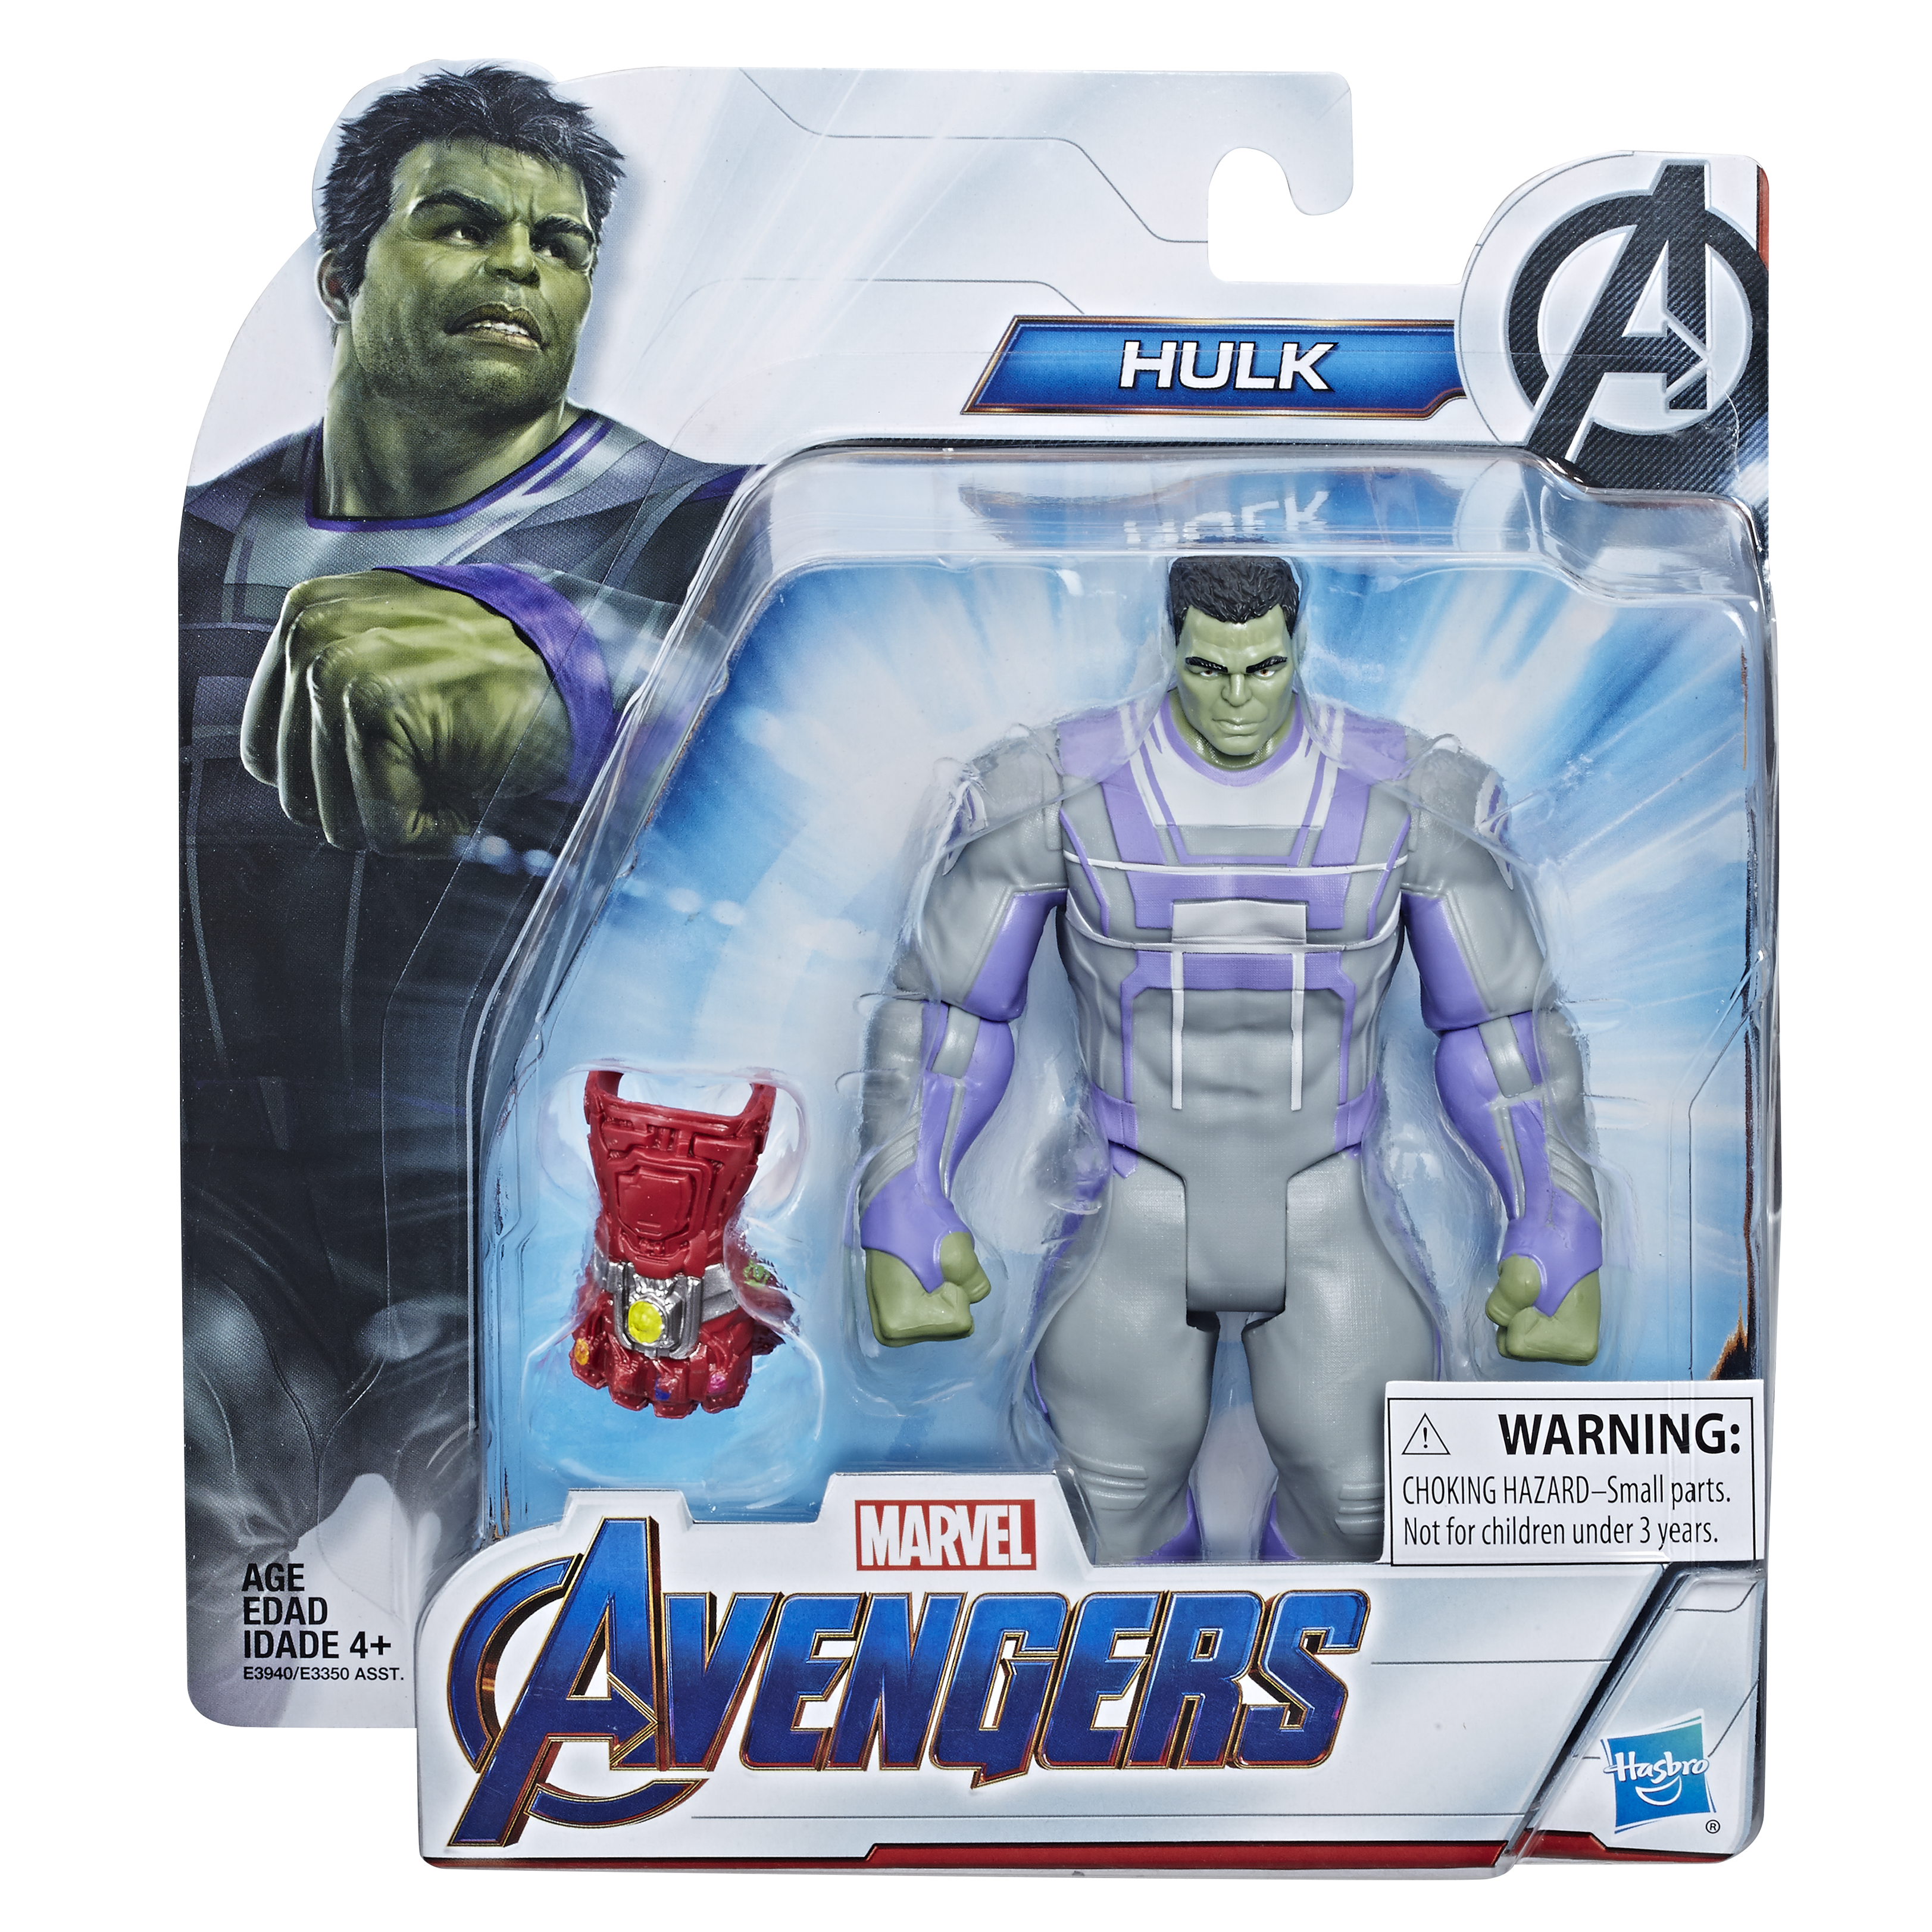 Avengers: Endgame' toys reveal major spoilers